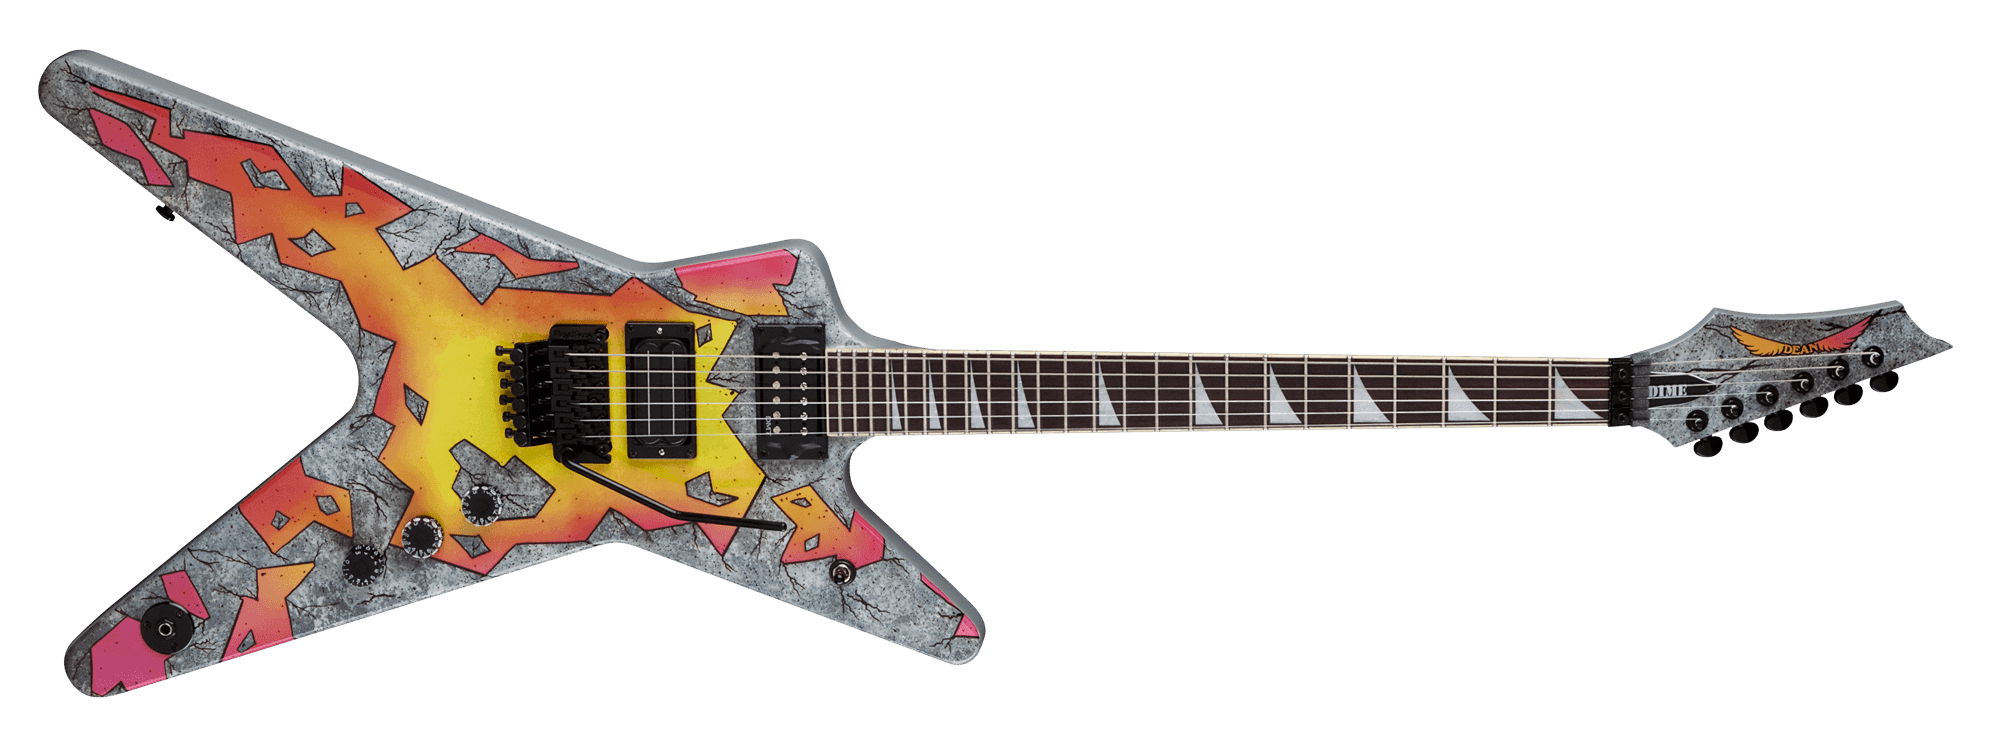 Primal concrete sledge guitar